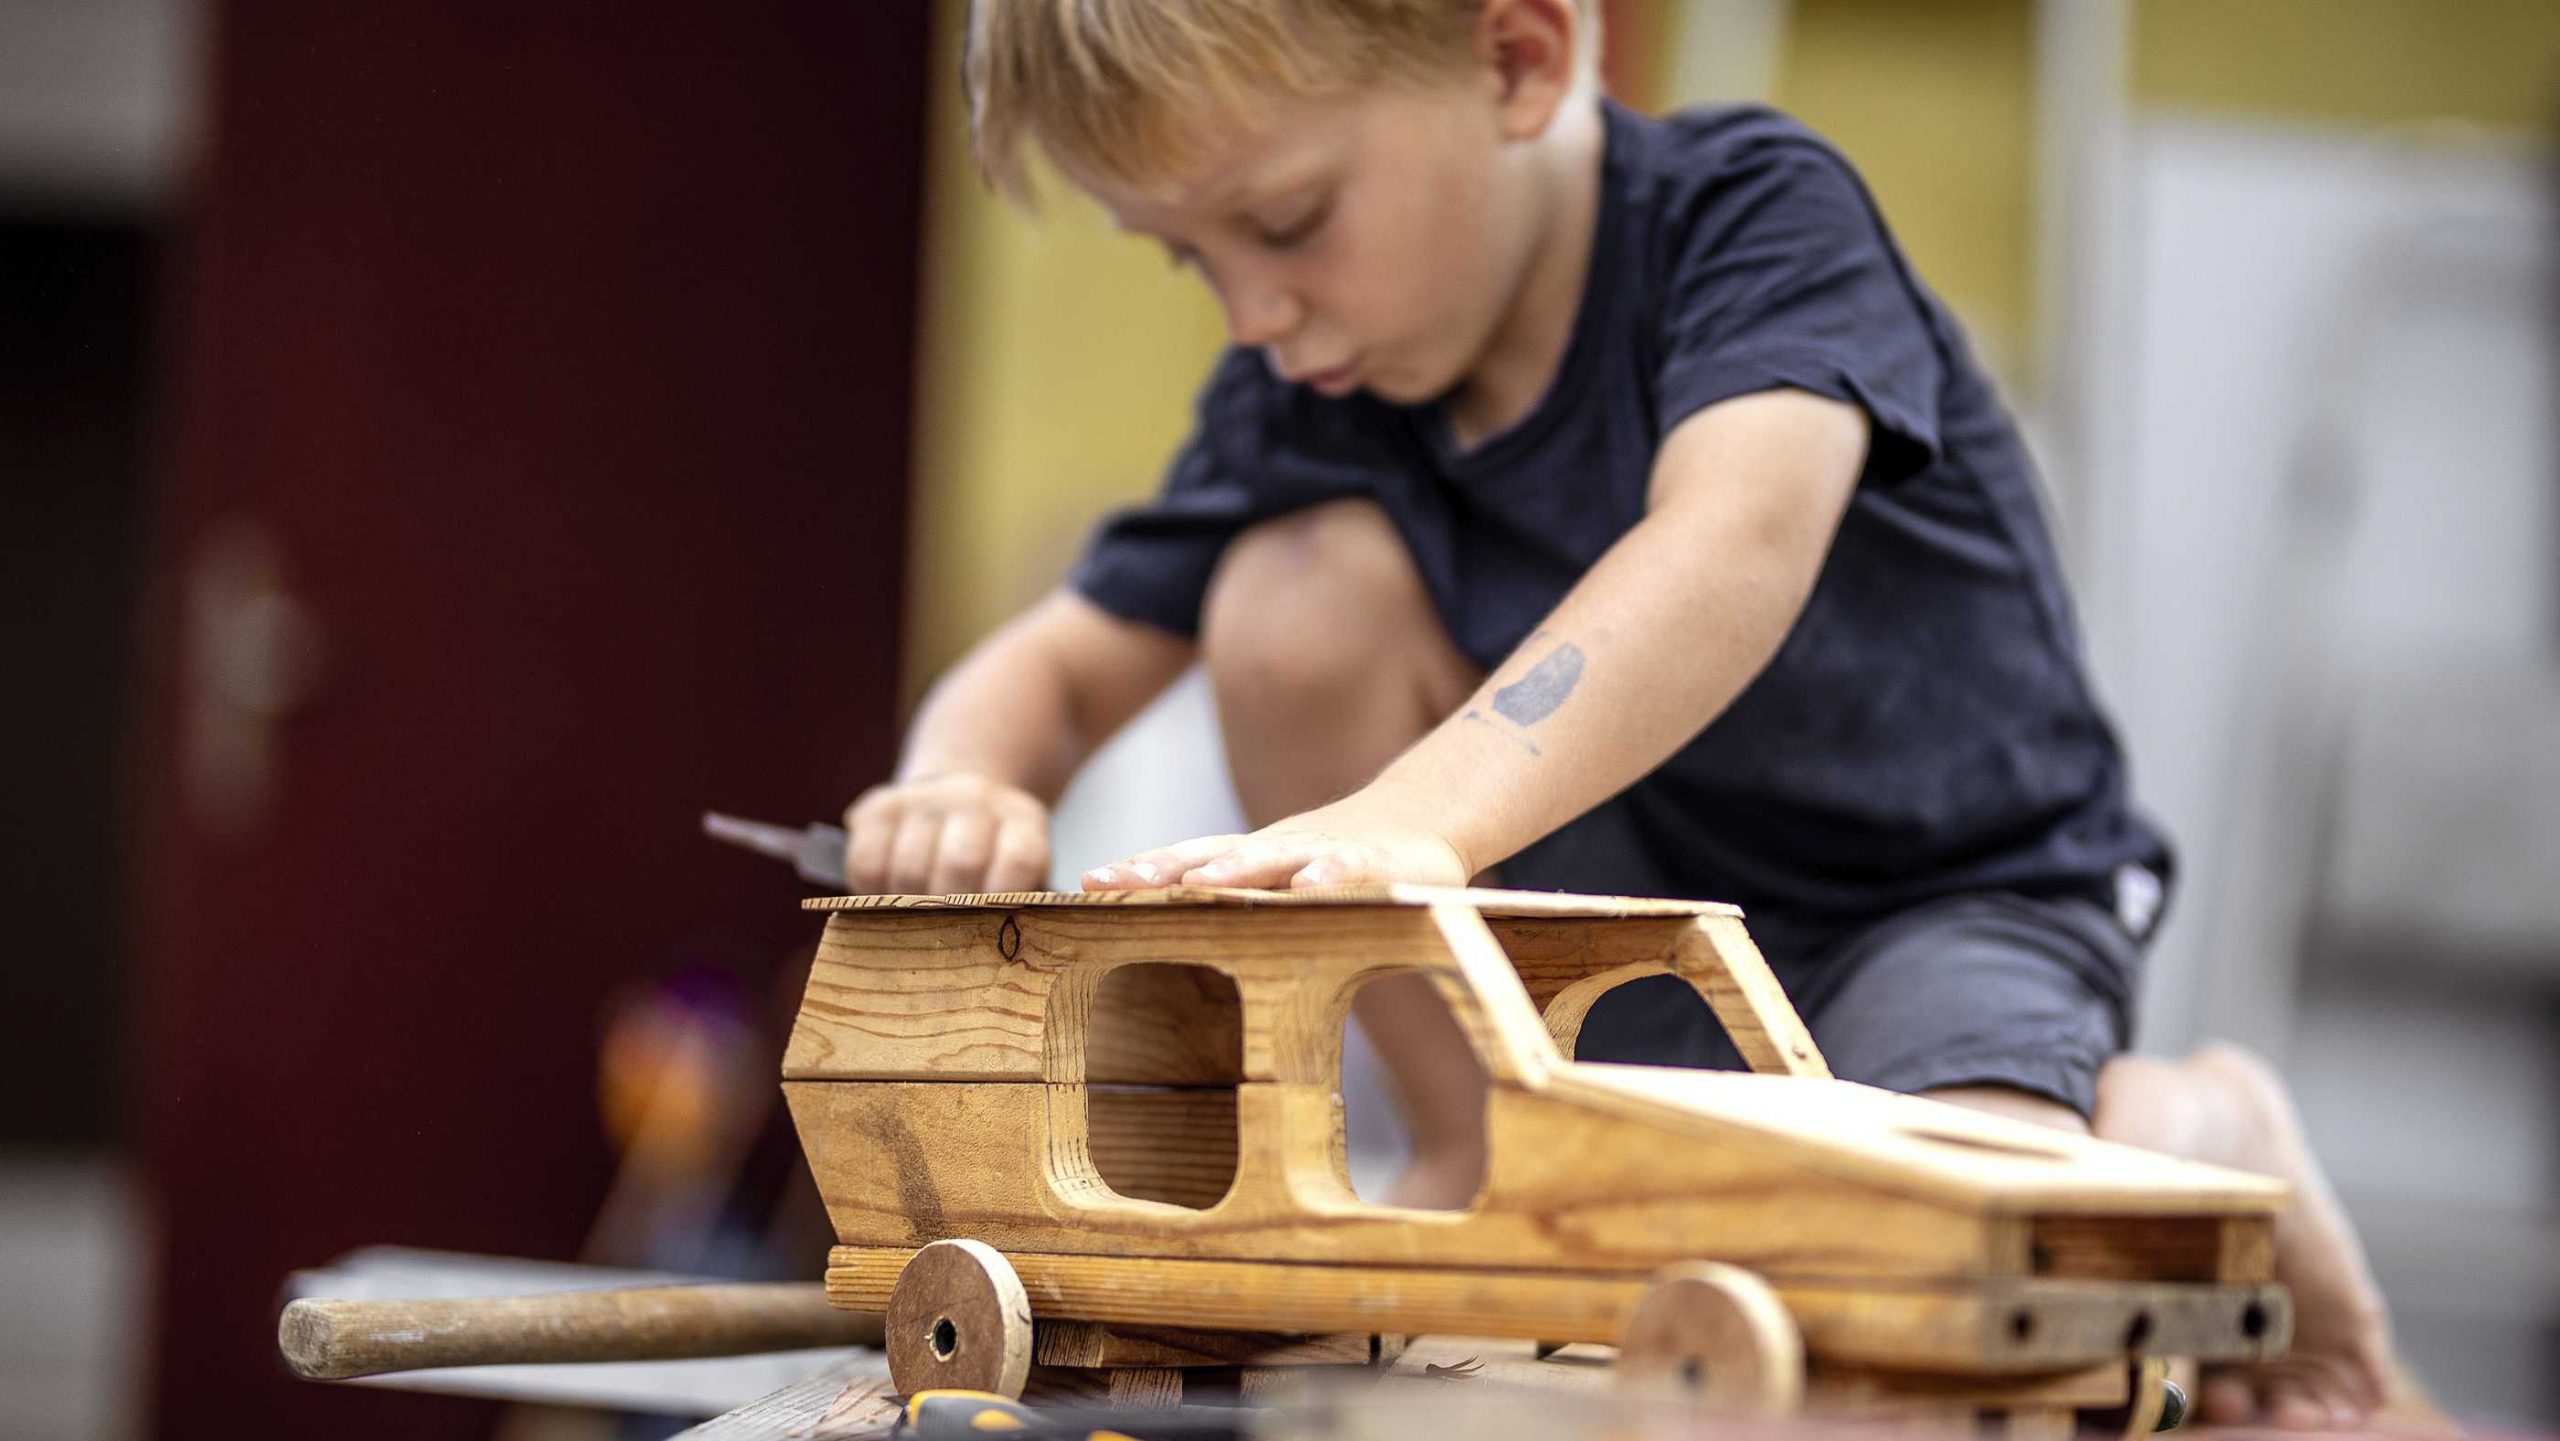 Holzarbeiten Mit Kindern: 7 Kreative Ideen Und Basteltipps über Holzarbeiten Mit Kindern Selber Machen